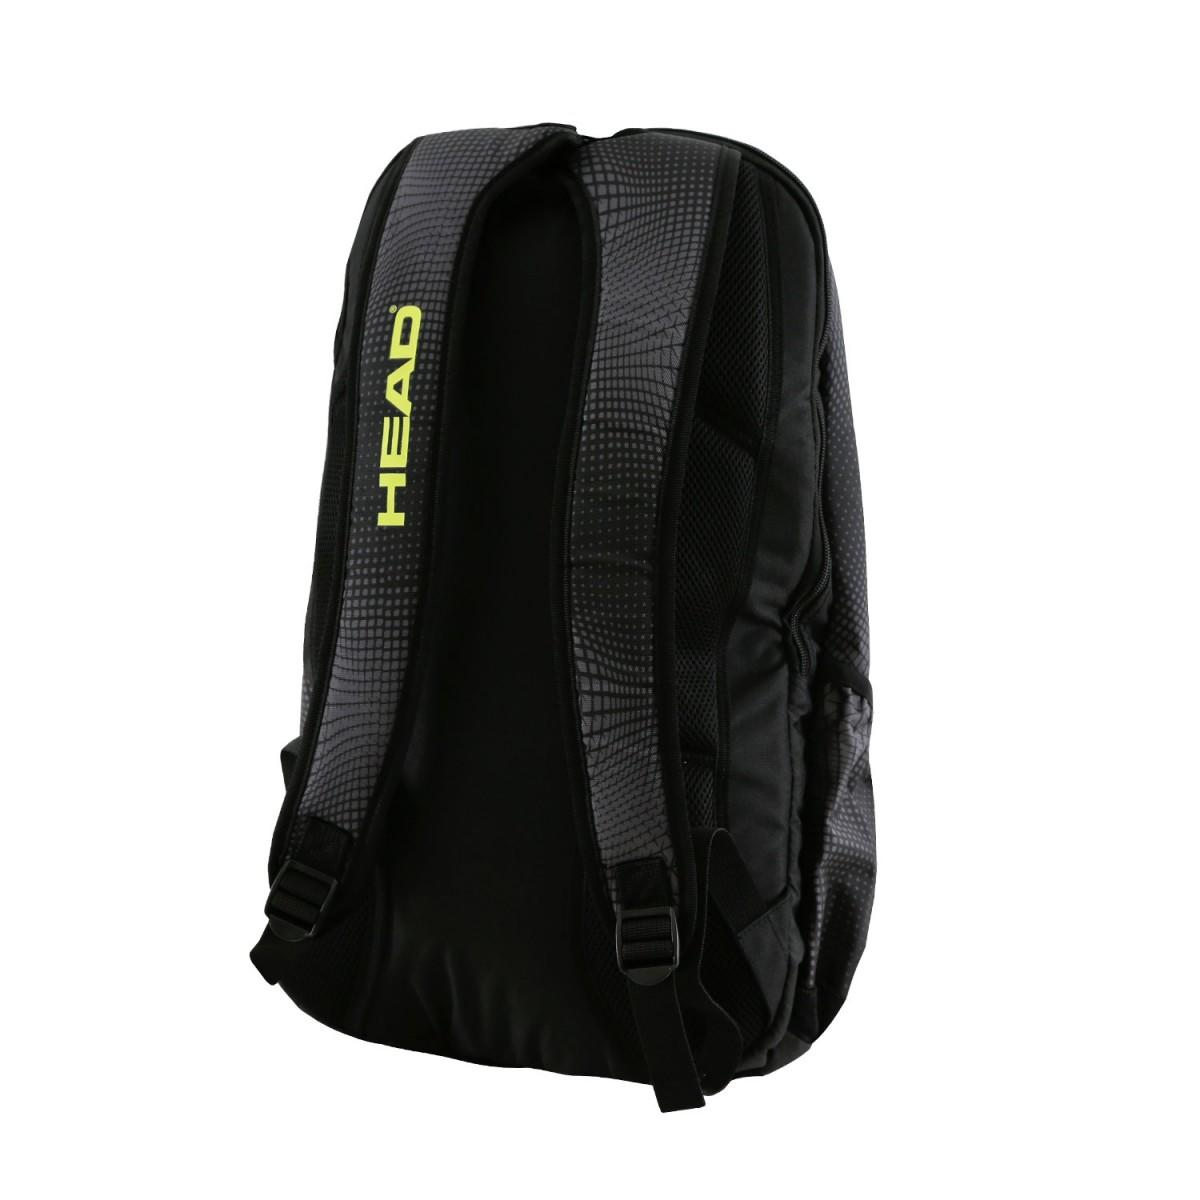 Теннисный рюкзак Head Tour Team Extreme Backpack black/yelllow